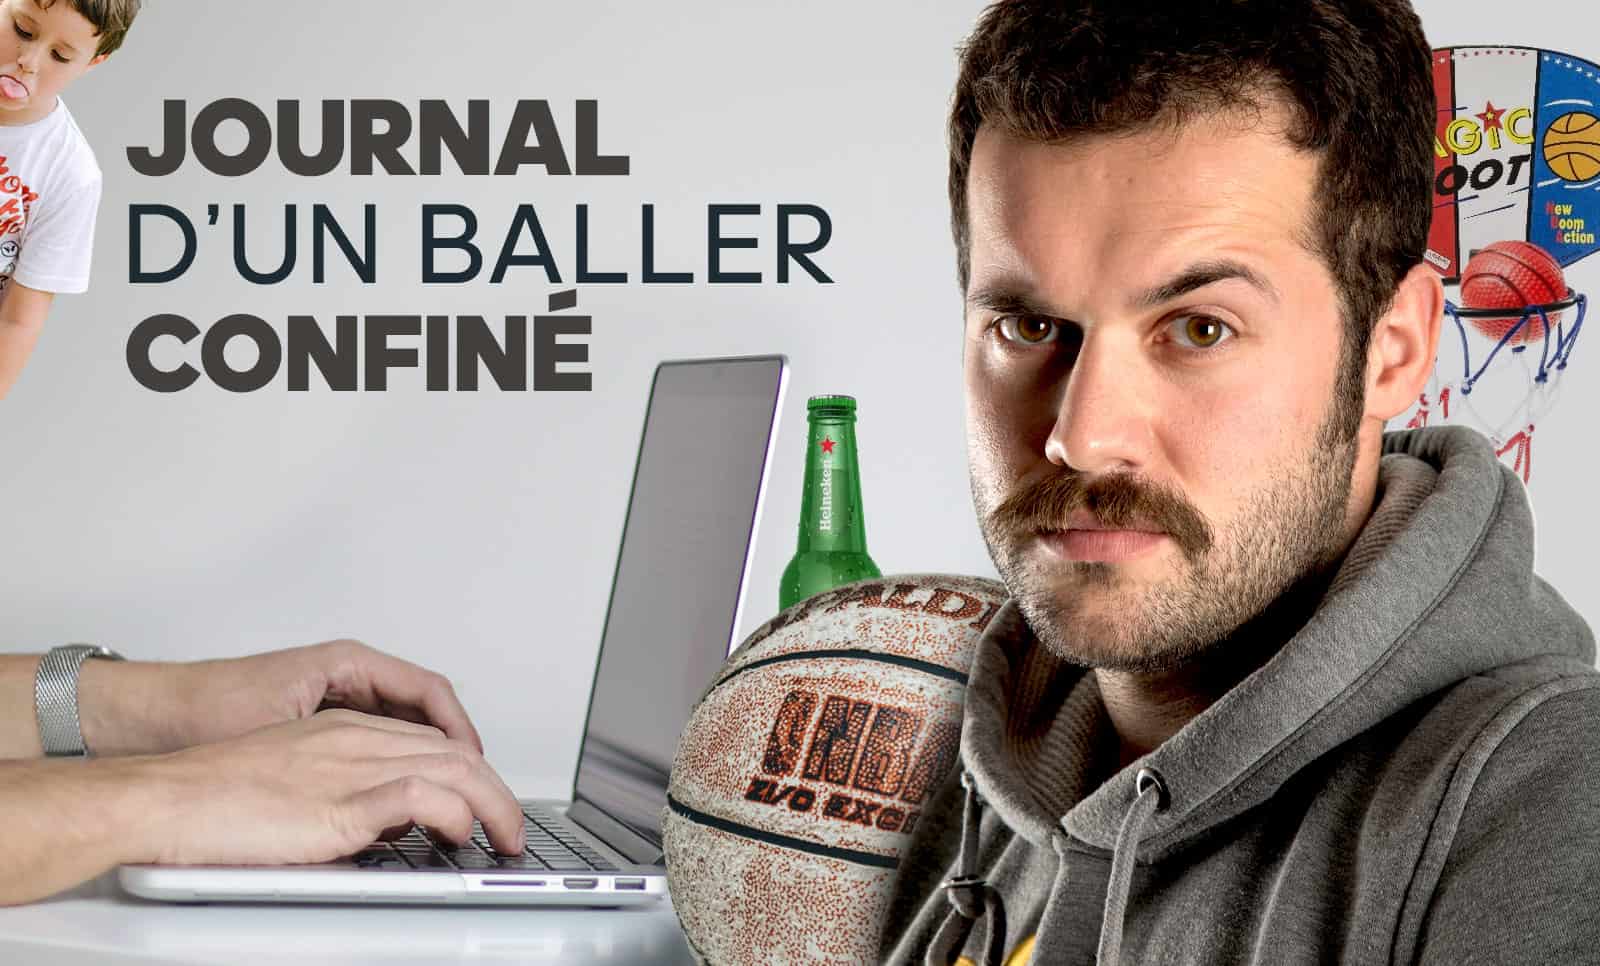 Journal d’un Baller confiné – Jour 6 : Rockets, reconquête et journaux des confinés